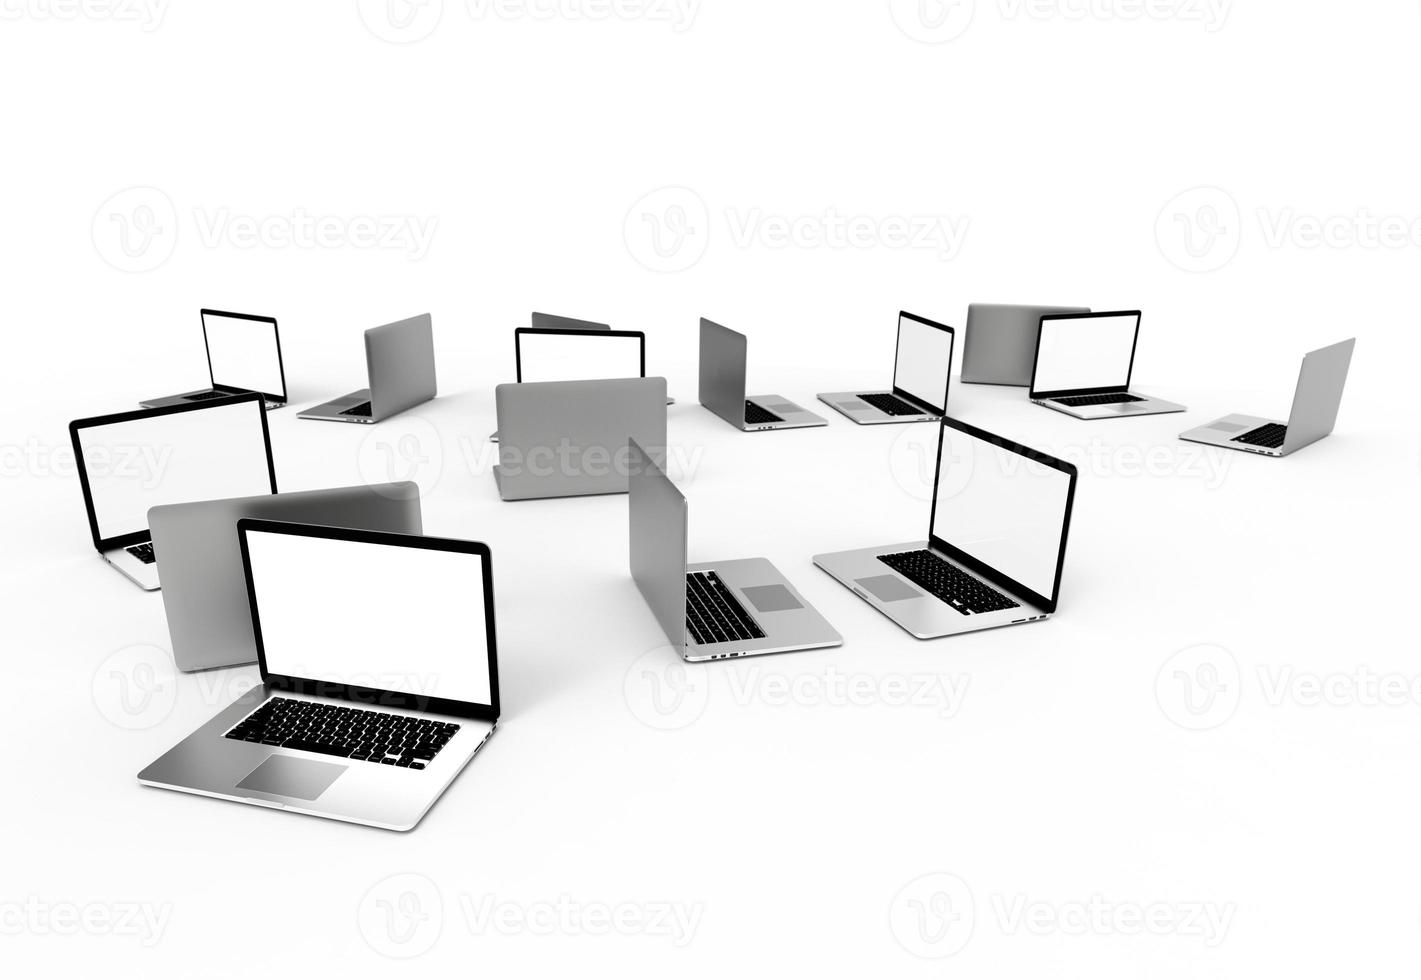 laptop moderno isolado no fundo branco. ilustração 3D. foto